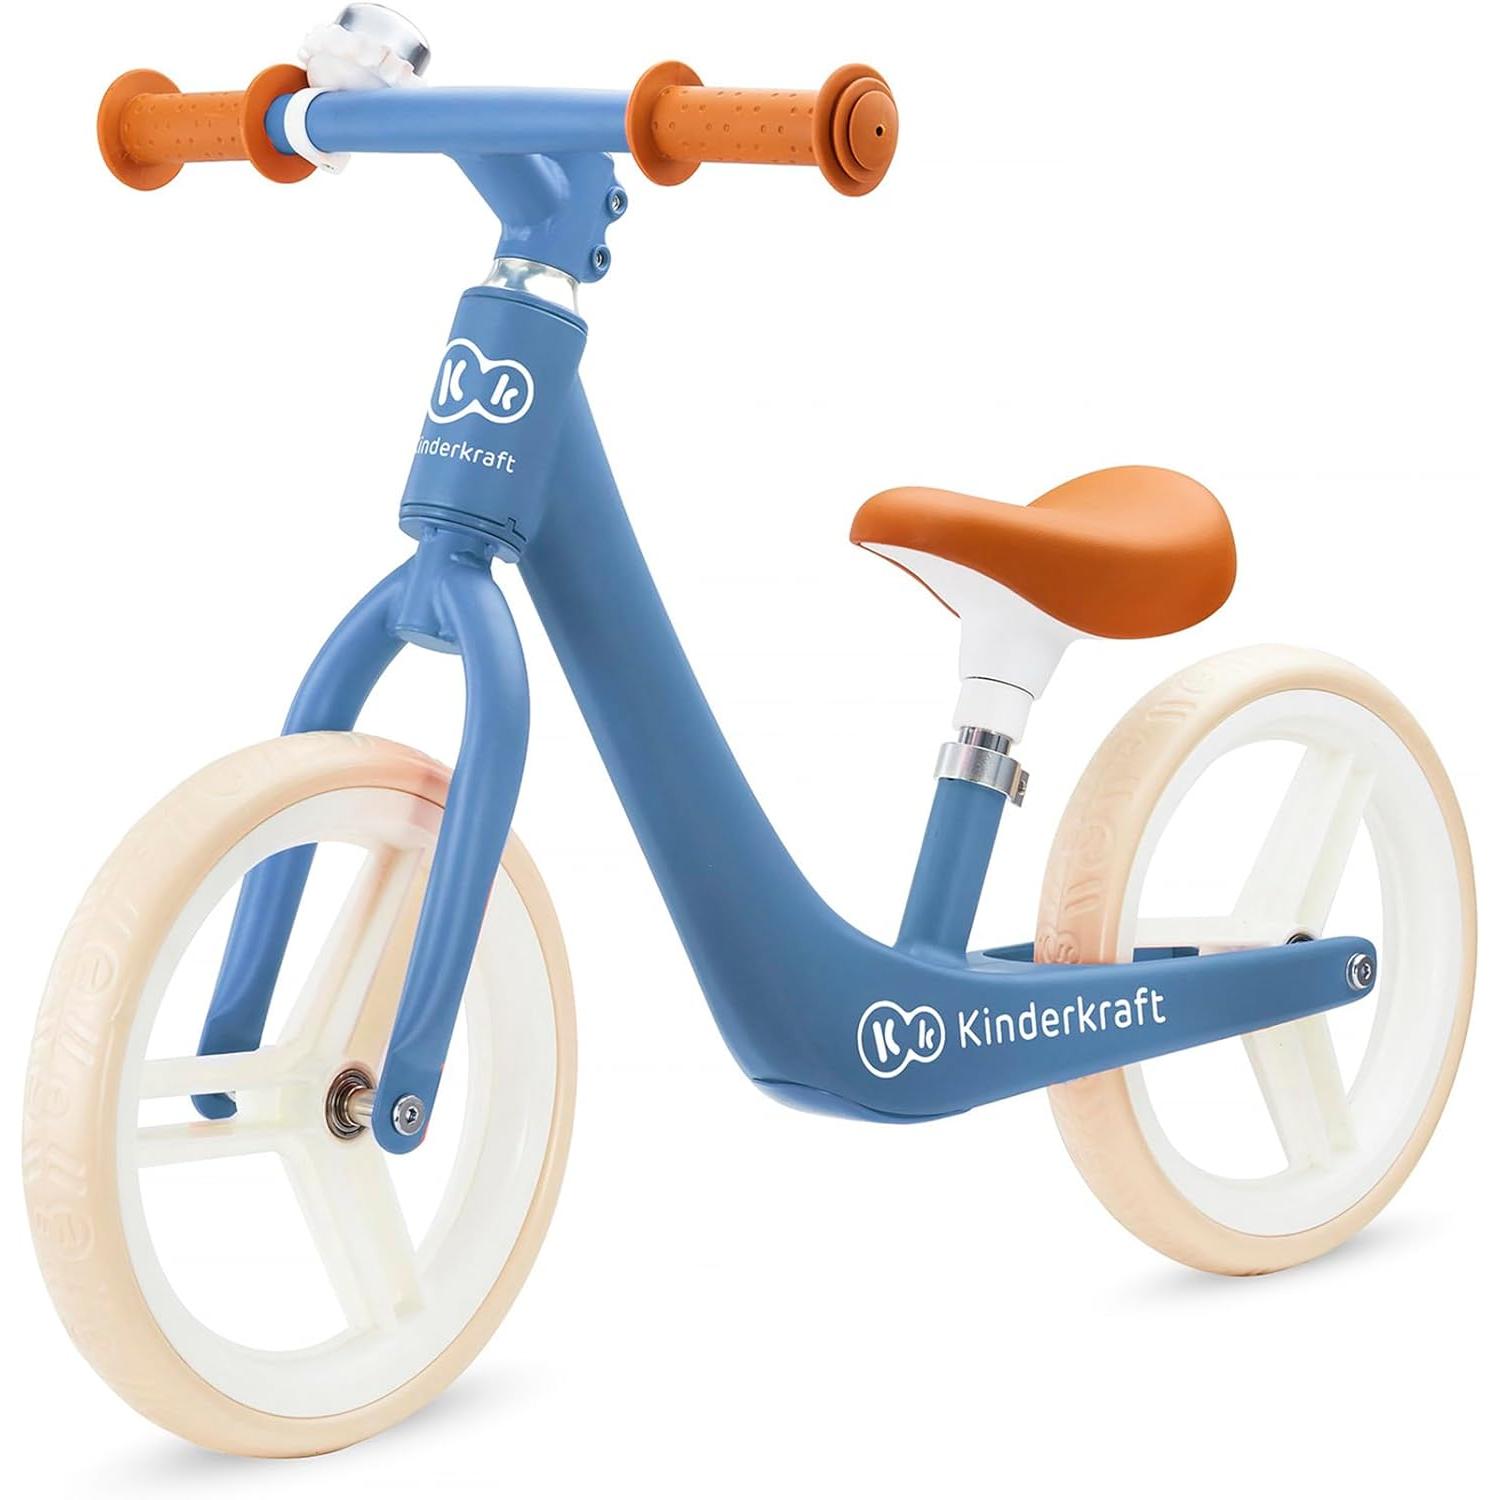 GOMO Triciclos infantiles para niños de 1 a 6 años, bicicleta de ruedas  grandes con mango de empuje (rosa/verde azulado)